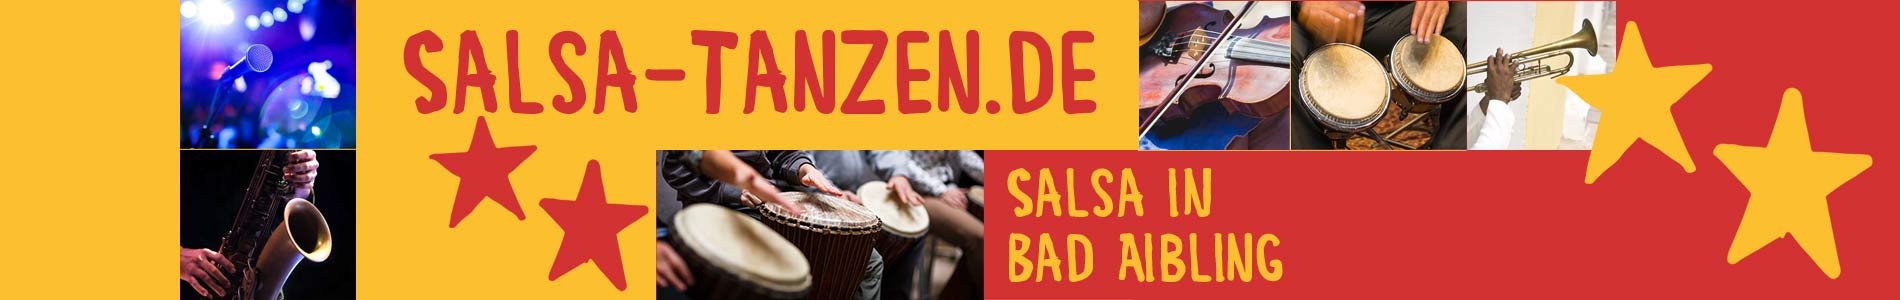 Salsa in Bad Aibling – Salsa lernen und tanzen, Tanzkurse, Partys, Veranstaltungen